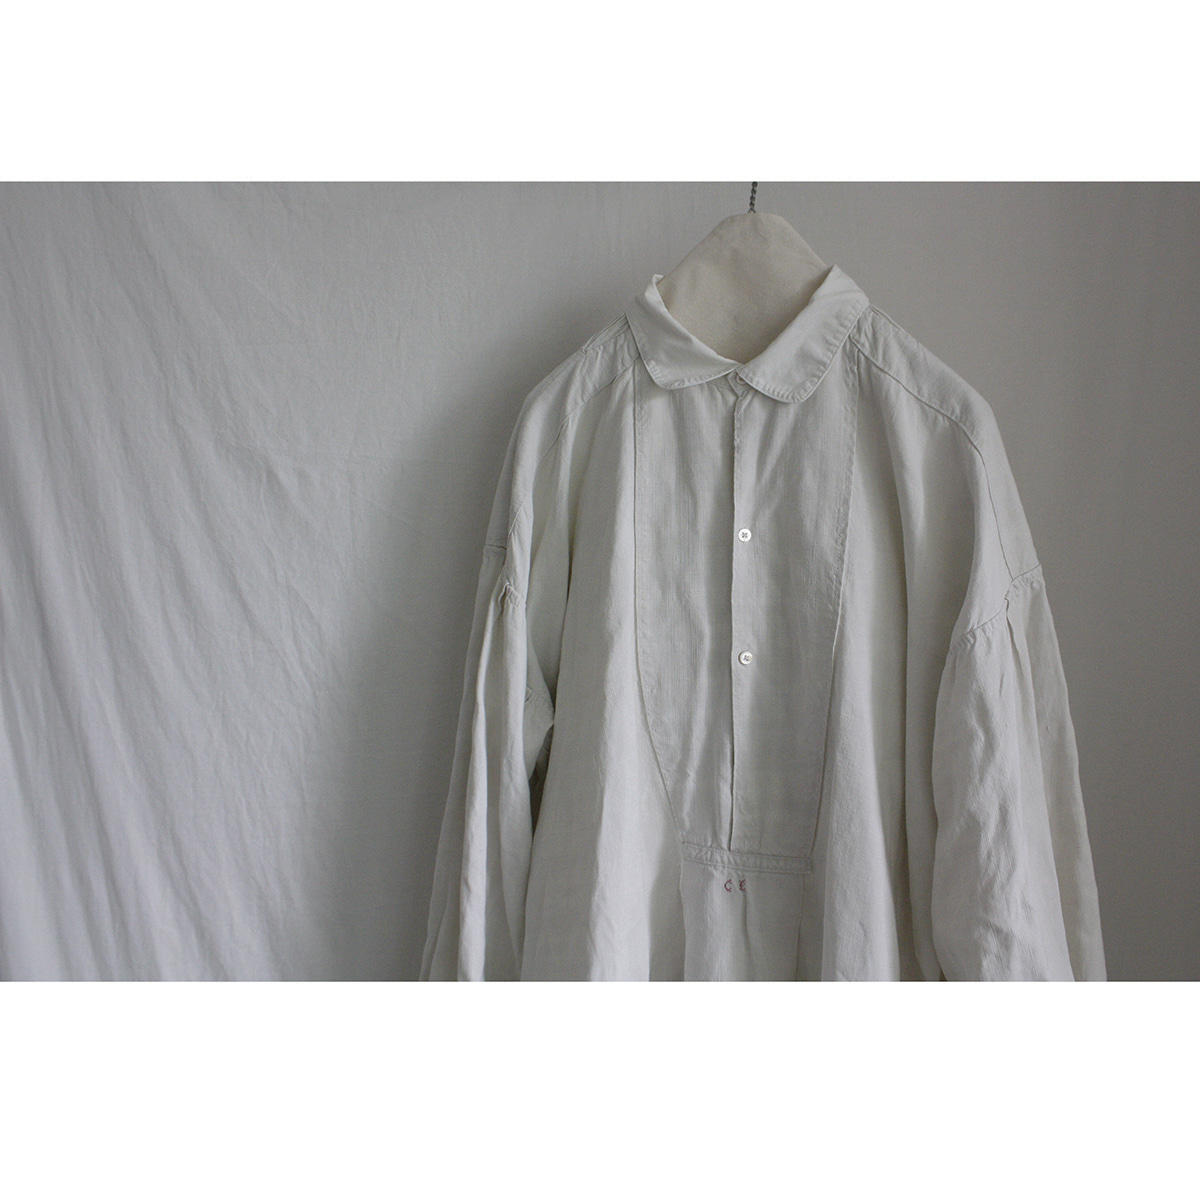 Antique Linen Shirt